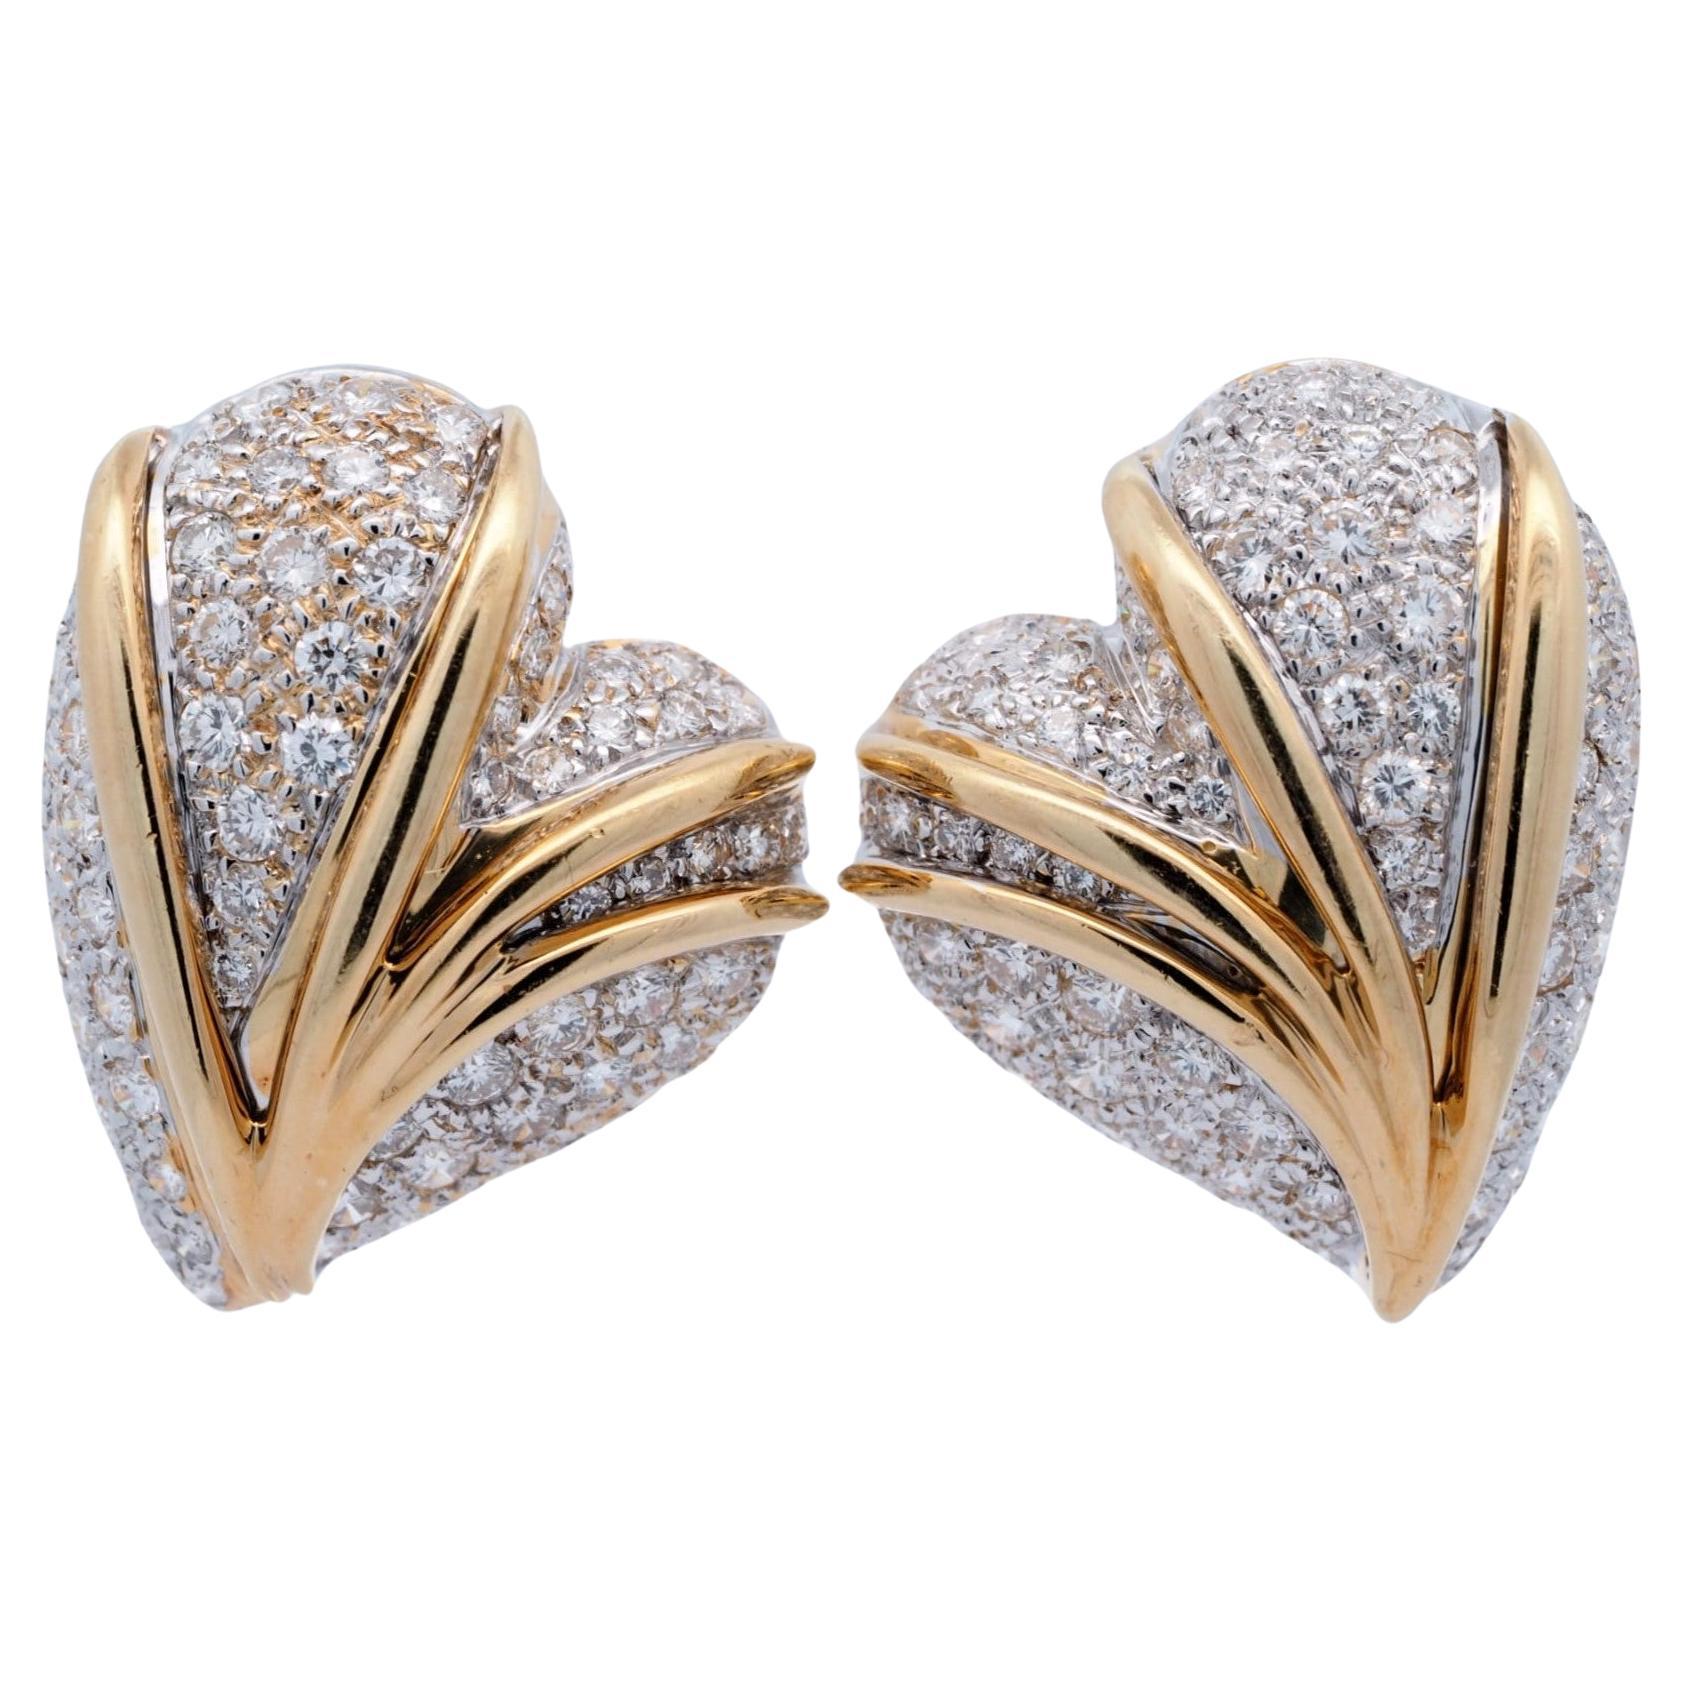 Stefan Hafner 18K Yellow Gold 5 ct Round Diamond Heart Earrings (Large) For Sale